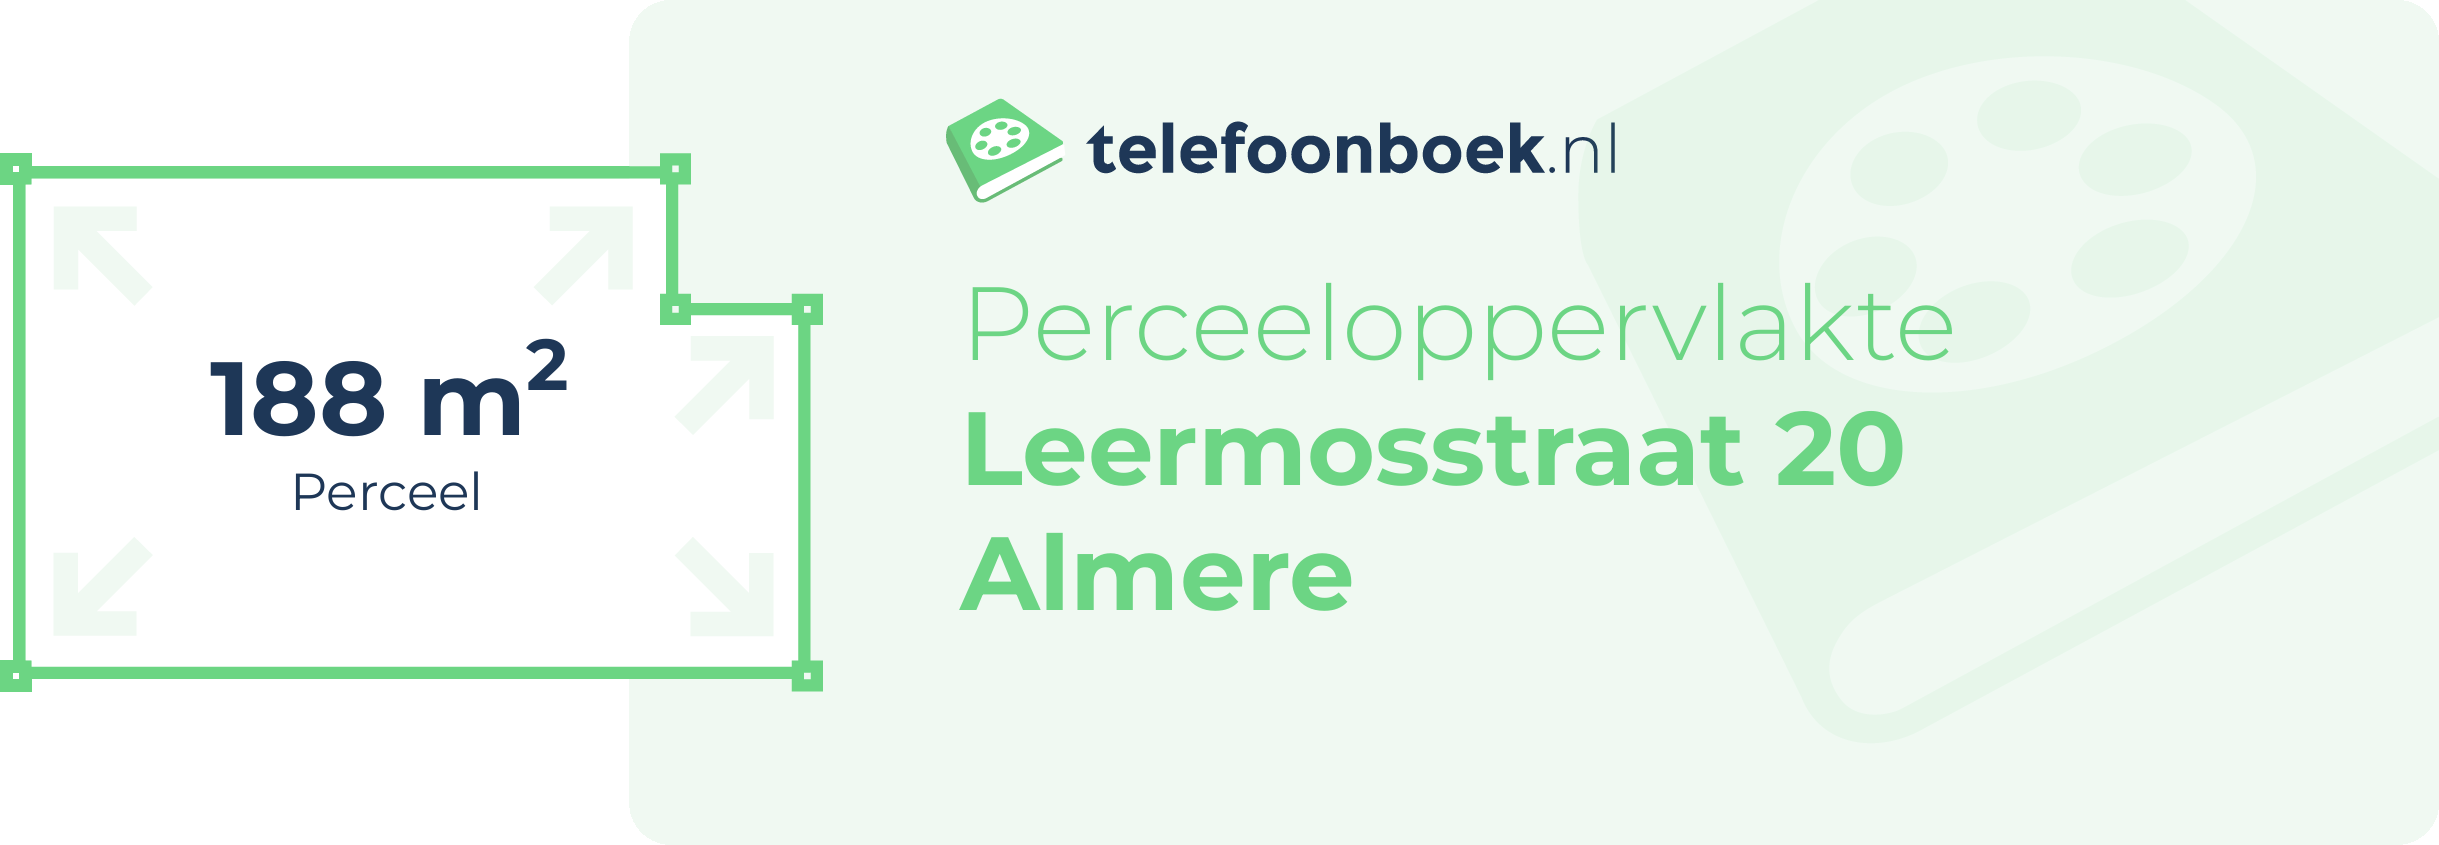 Perceeloppervlakte Leermosstraat 20 Almere